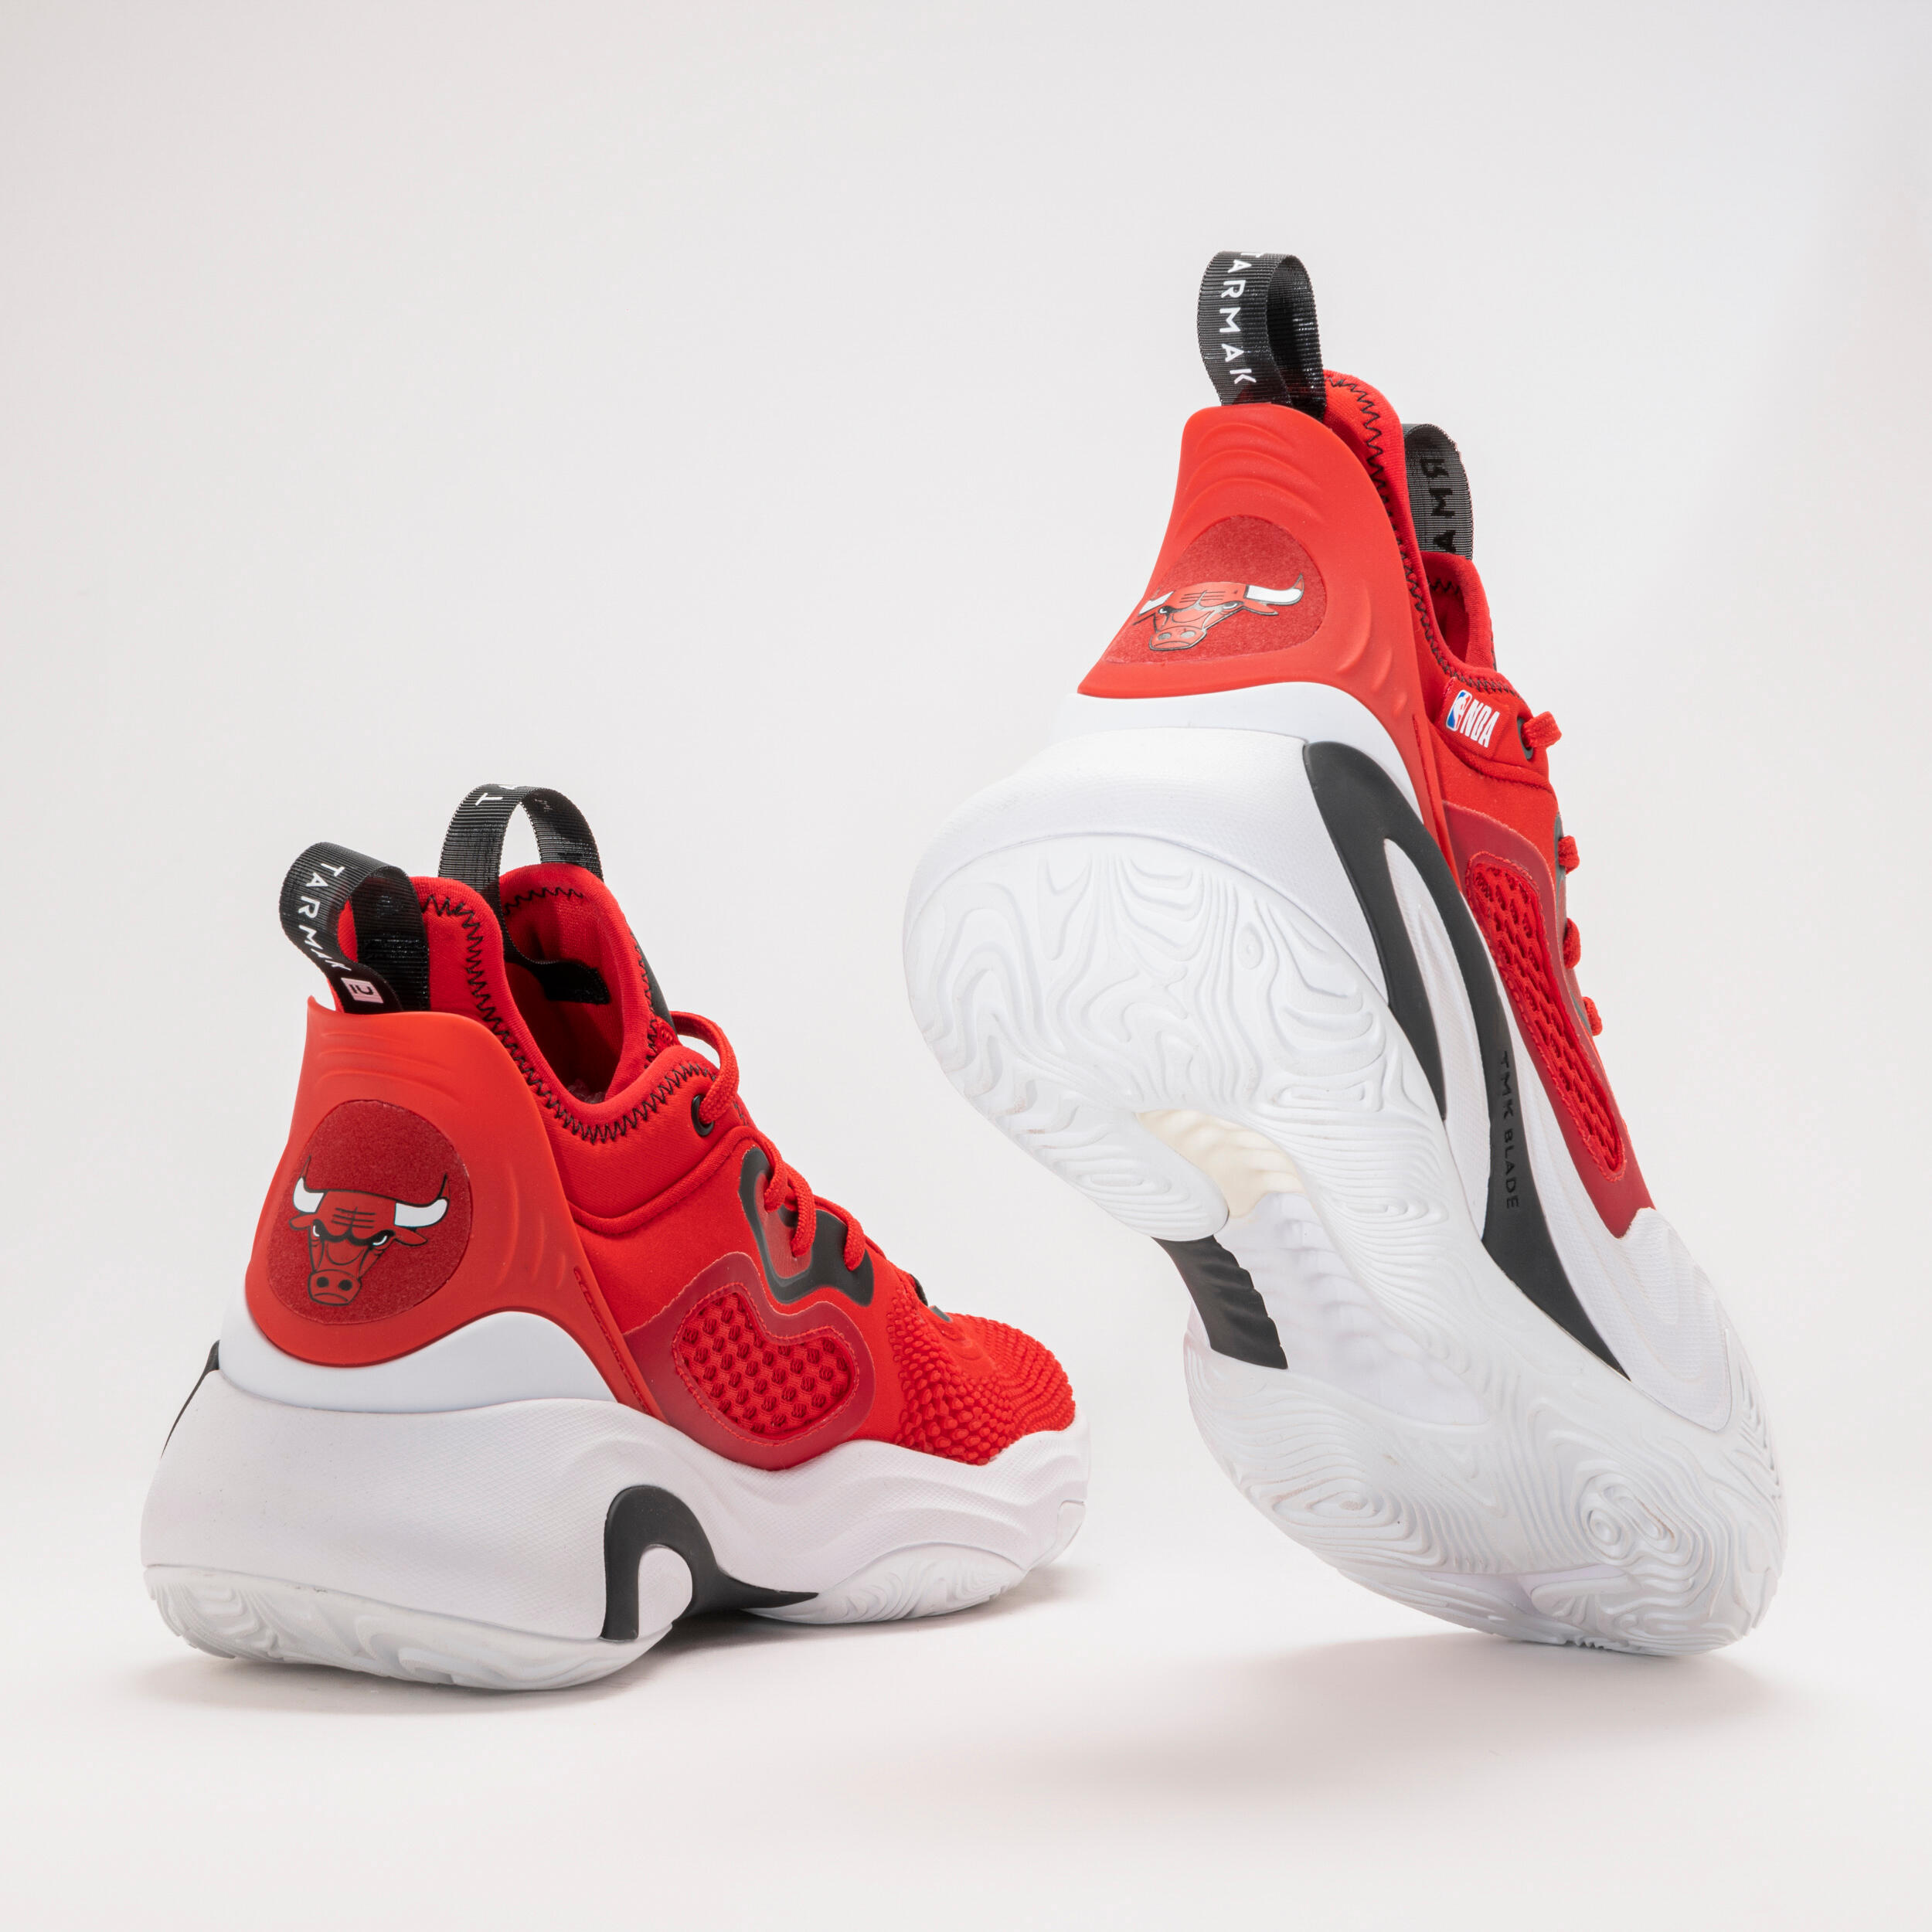 Men's/Women's Basketball Shoes SE900 - Red/NBA Chicago Bulls 3/10